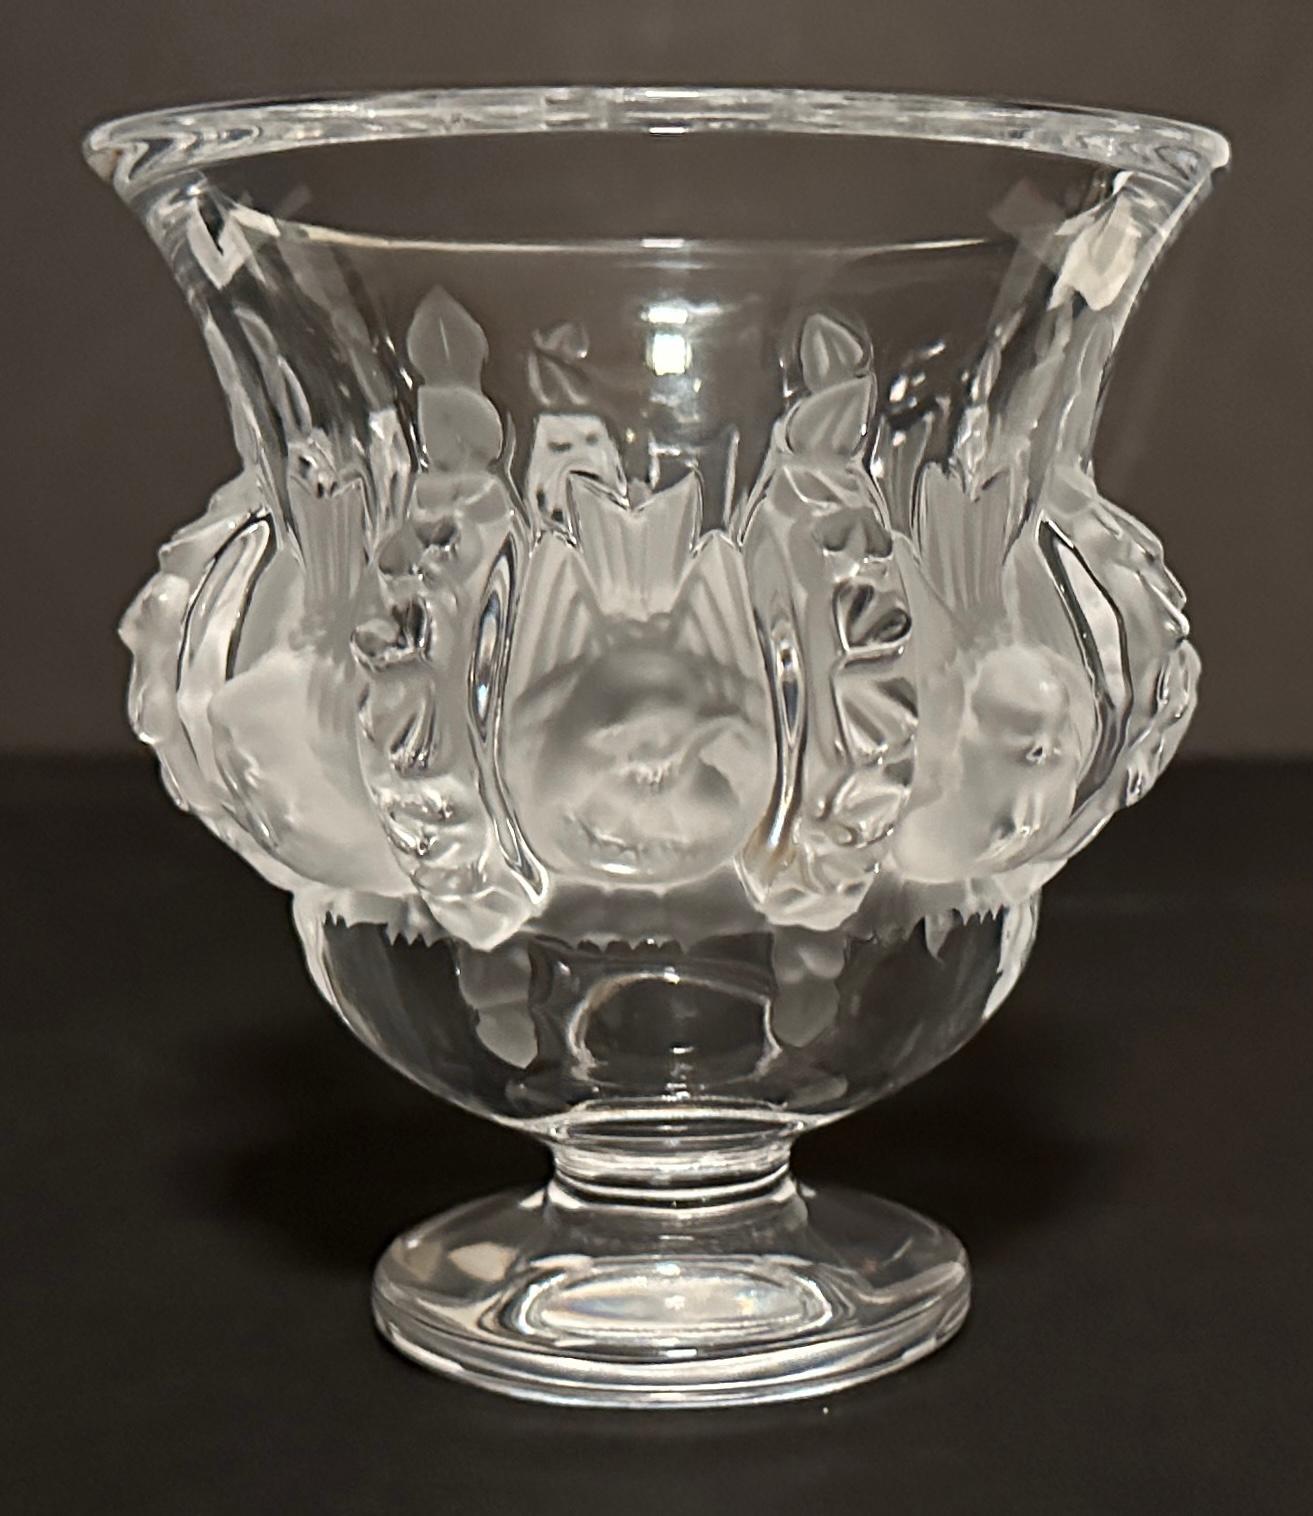 Vase aus Dampierre-Kristall von Lalique, signiert im Boden.
Diese Vase wurde 1948 von Marc Lalique entworfen und ist mit geschnitzten Vögeln in satiniertem Kristall verziert. Mit dieser Vase zollt Lalique zwei Themen Tribut, die René Lalique sehr